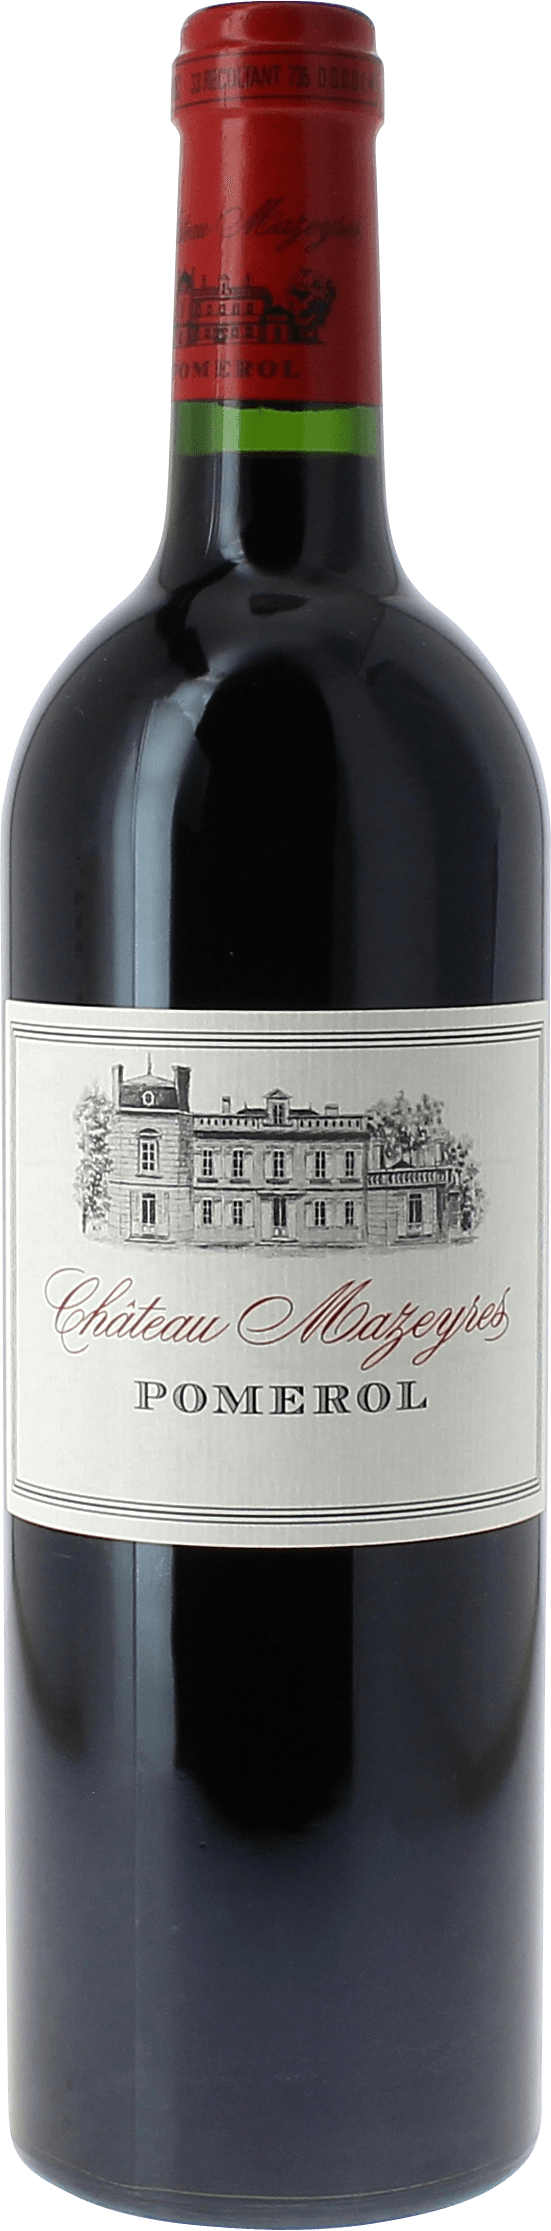 Mazeyres 2000  Pomerol, Bordeaux rouge